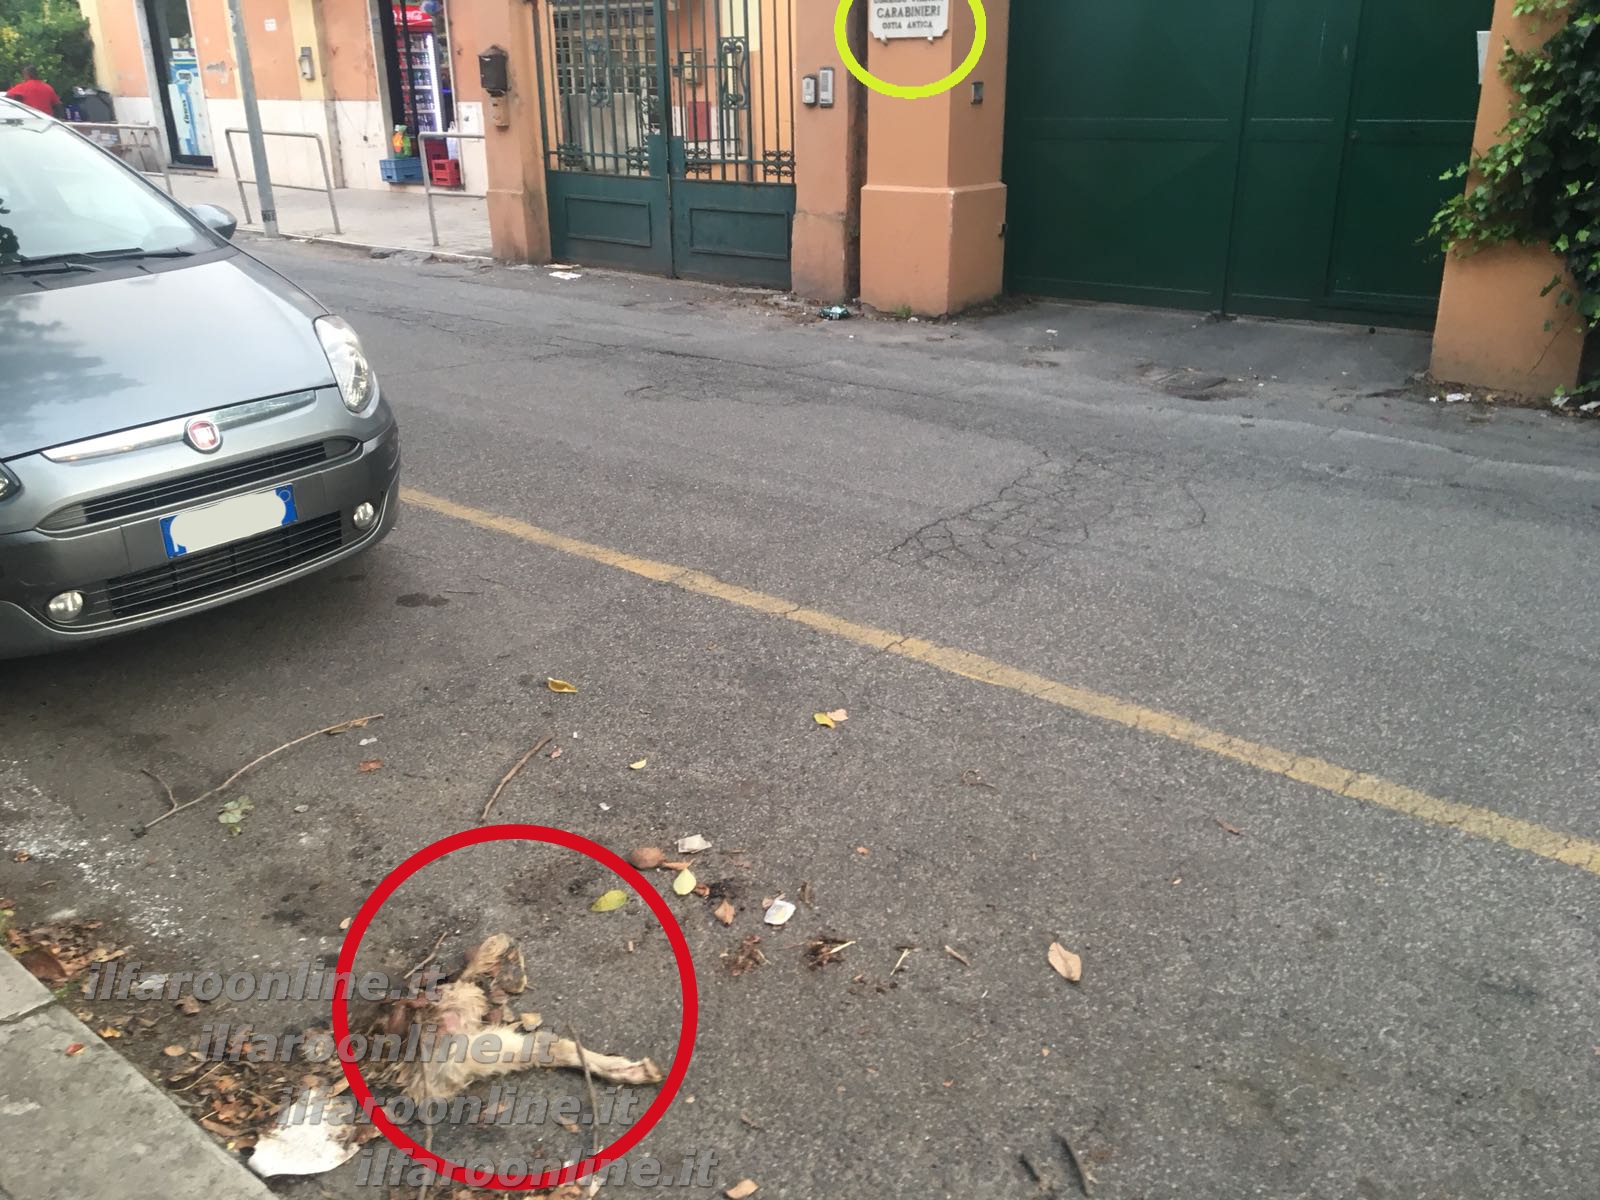 Nel cerchio rosso i resti del capretto e nel giallo la targa della stazione carabinieri di via delle Saline